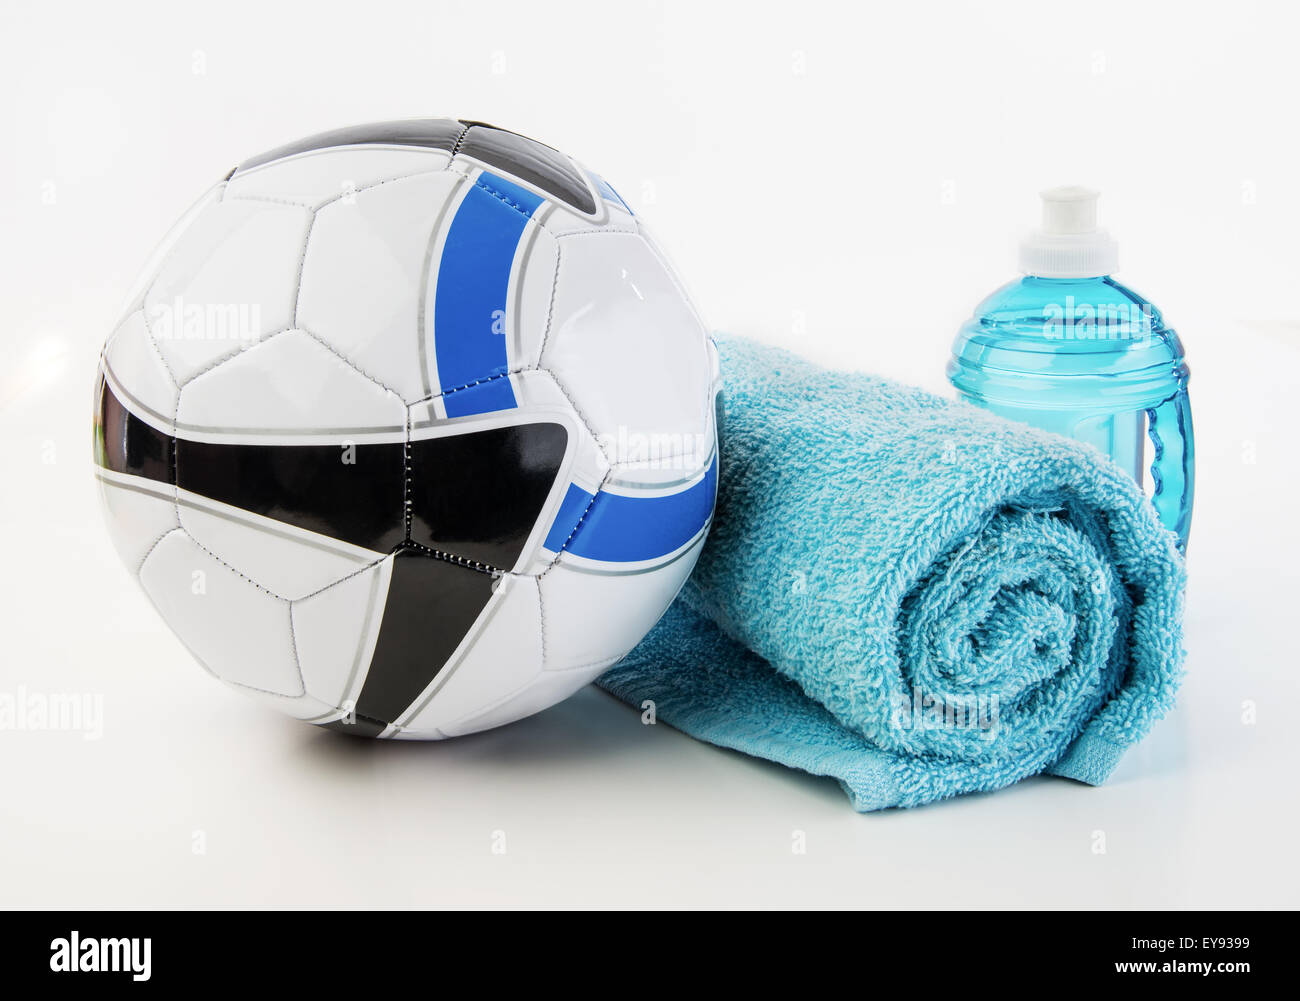 Ballon de soccer avec une serviette et une bouteille d'eau Banque D'Images